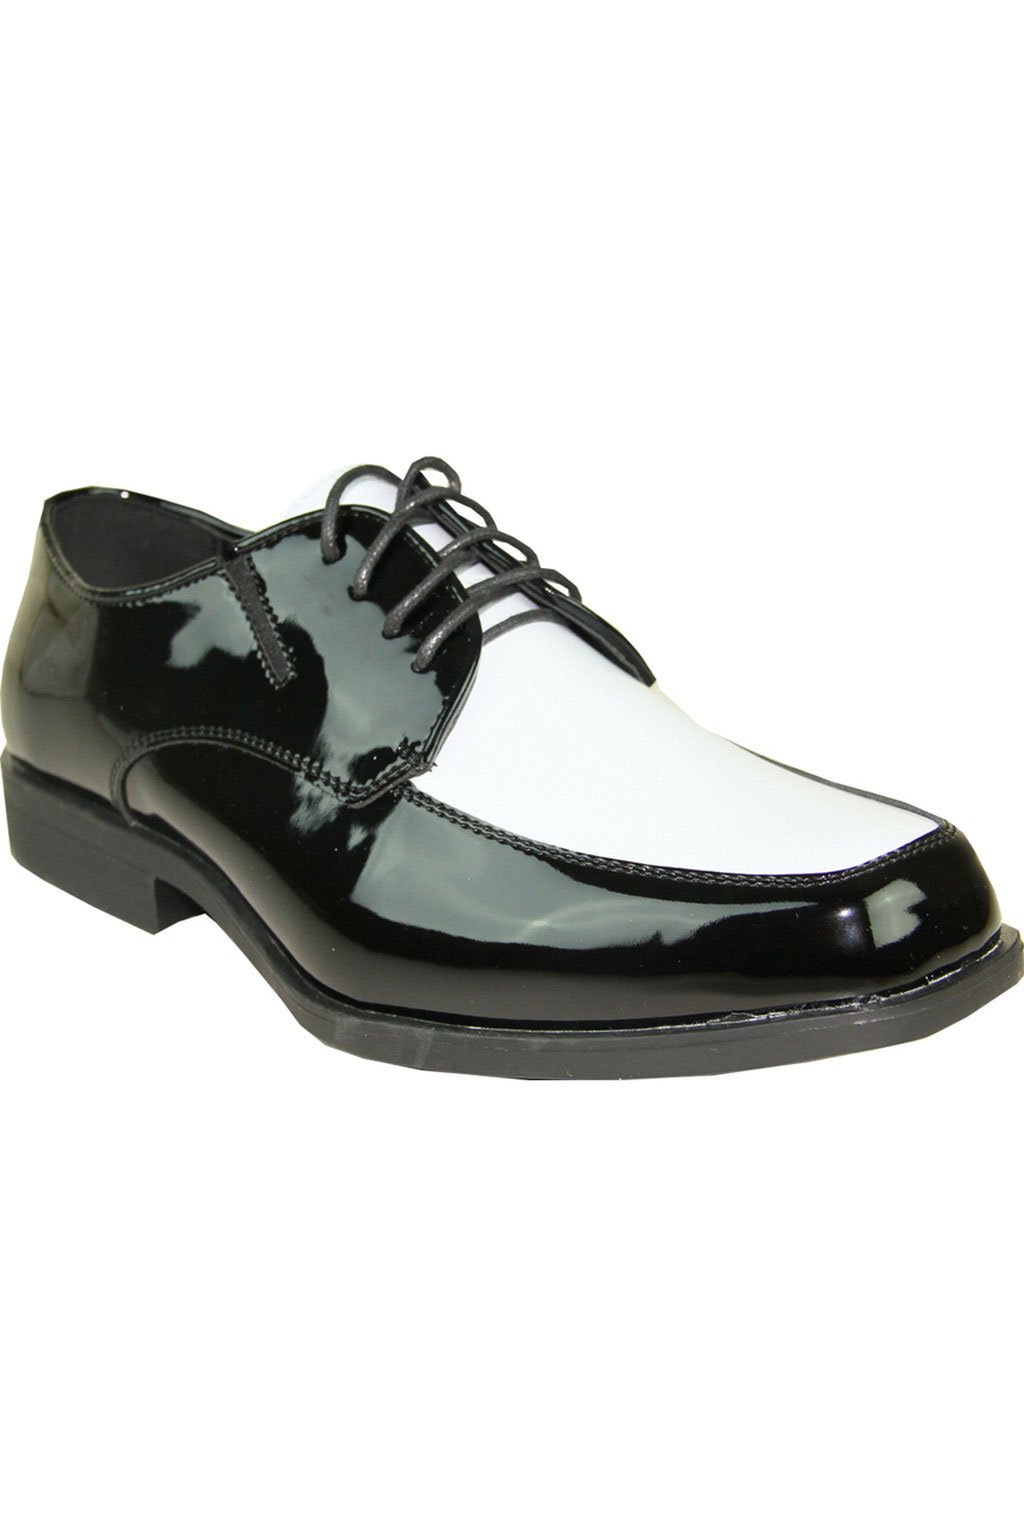 Genova" Black and White Vangelo Tuxedo Shoes